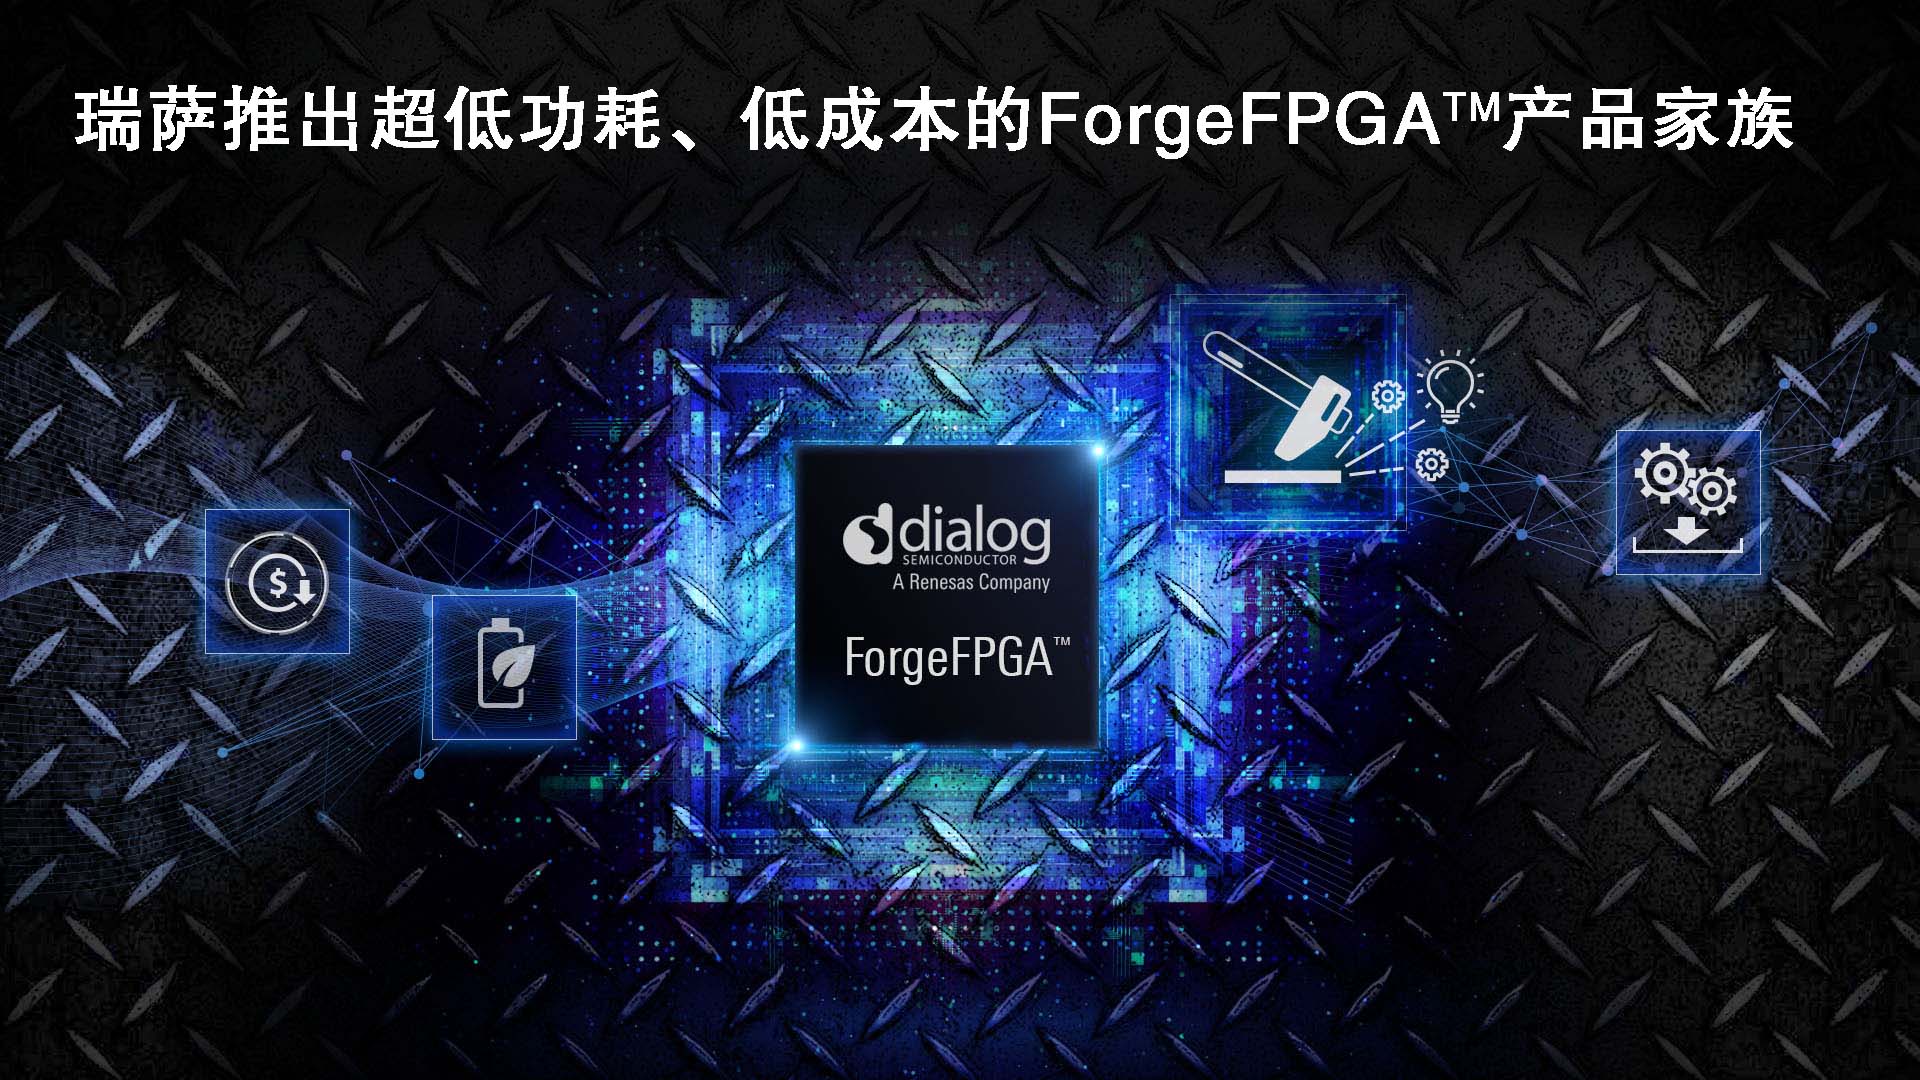 “瑞萨电子推出具有超低功耗、低成本的FPGA产品家族,